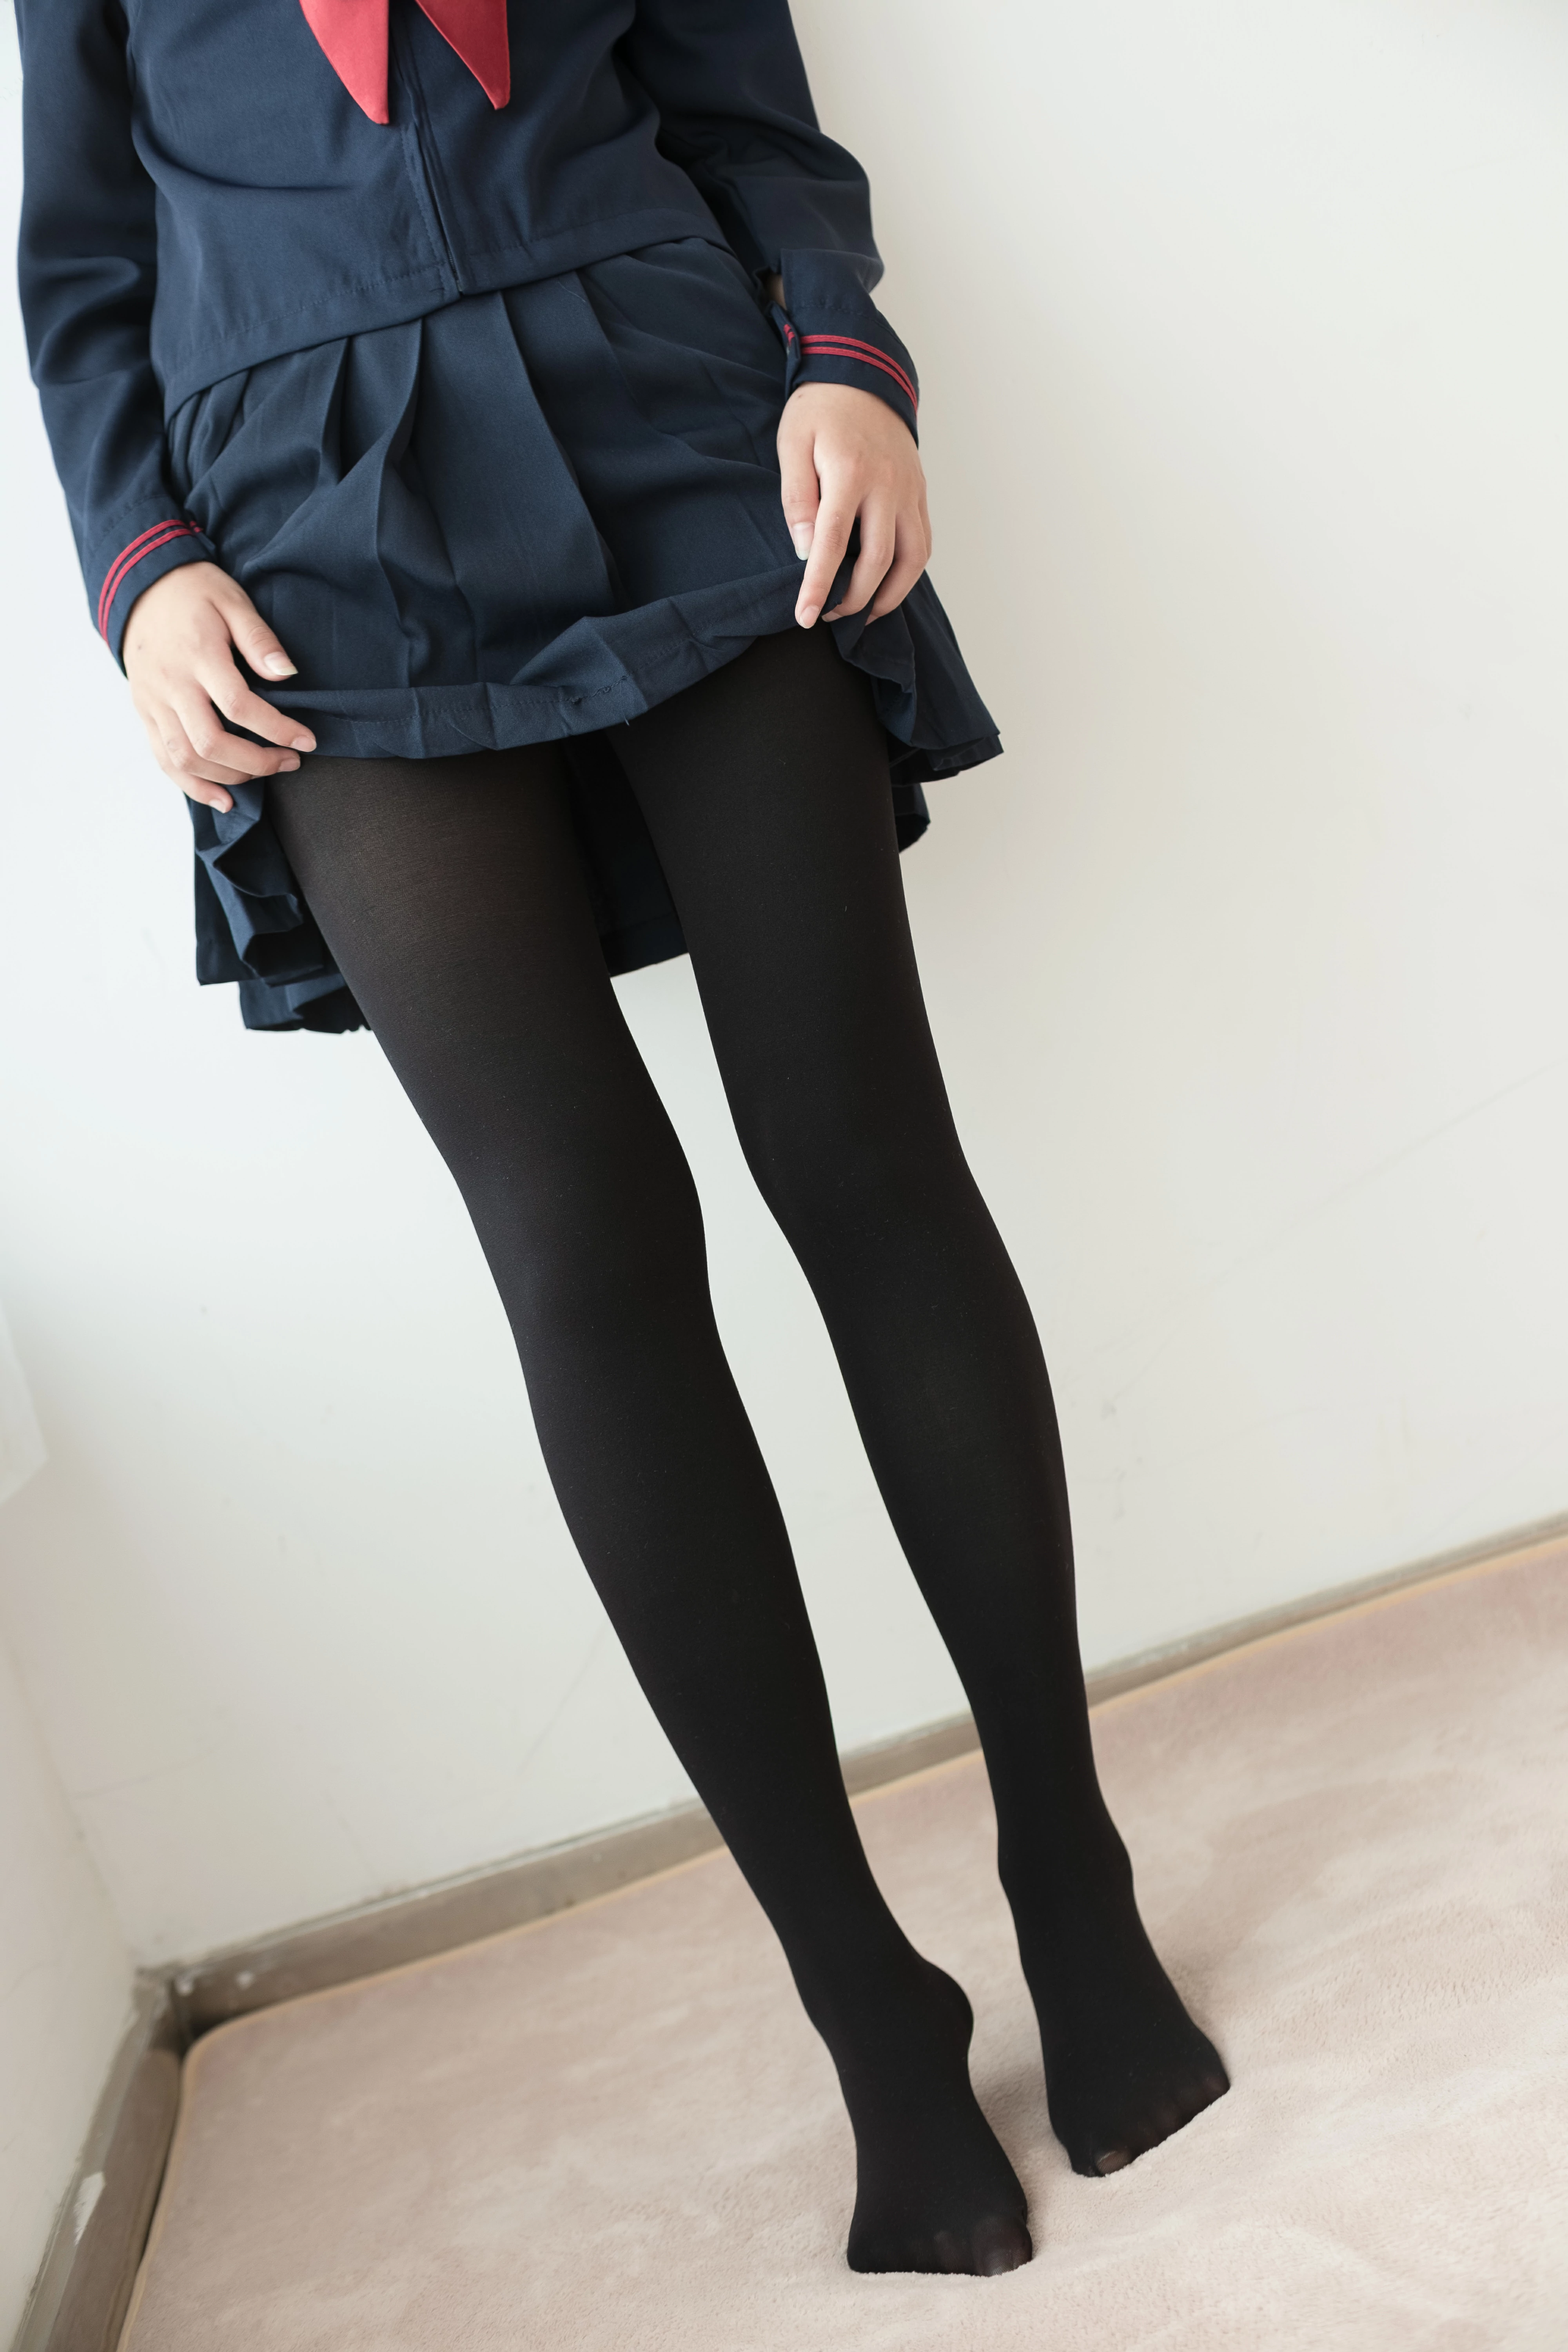 [森萝财团]BETA-024 性感学妹小萝莉 蓝色高中女生制服与短裙加黑色丝袜美腿玉足私房写真集,